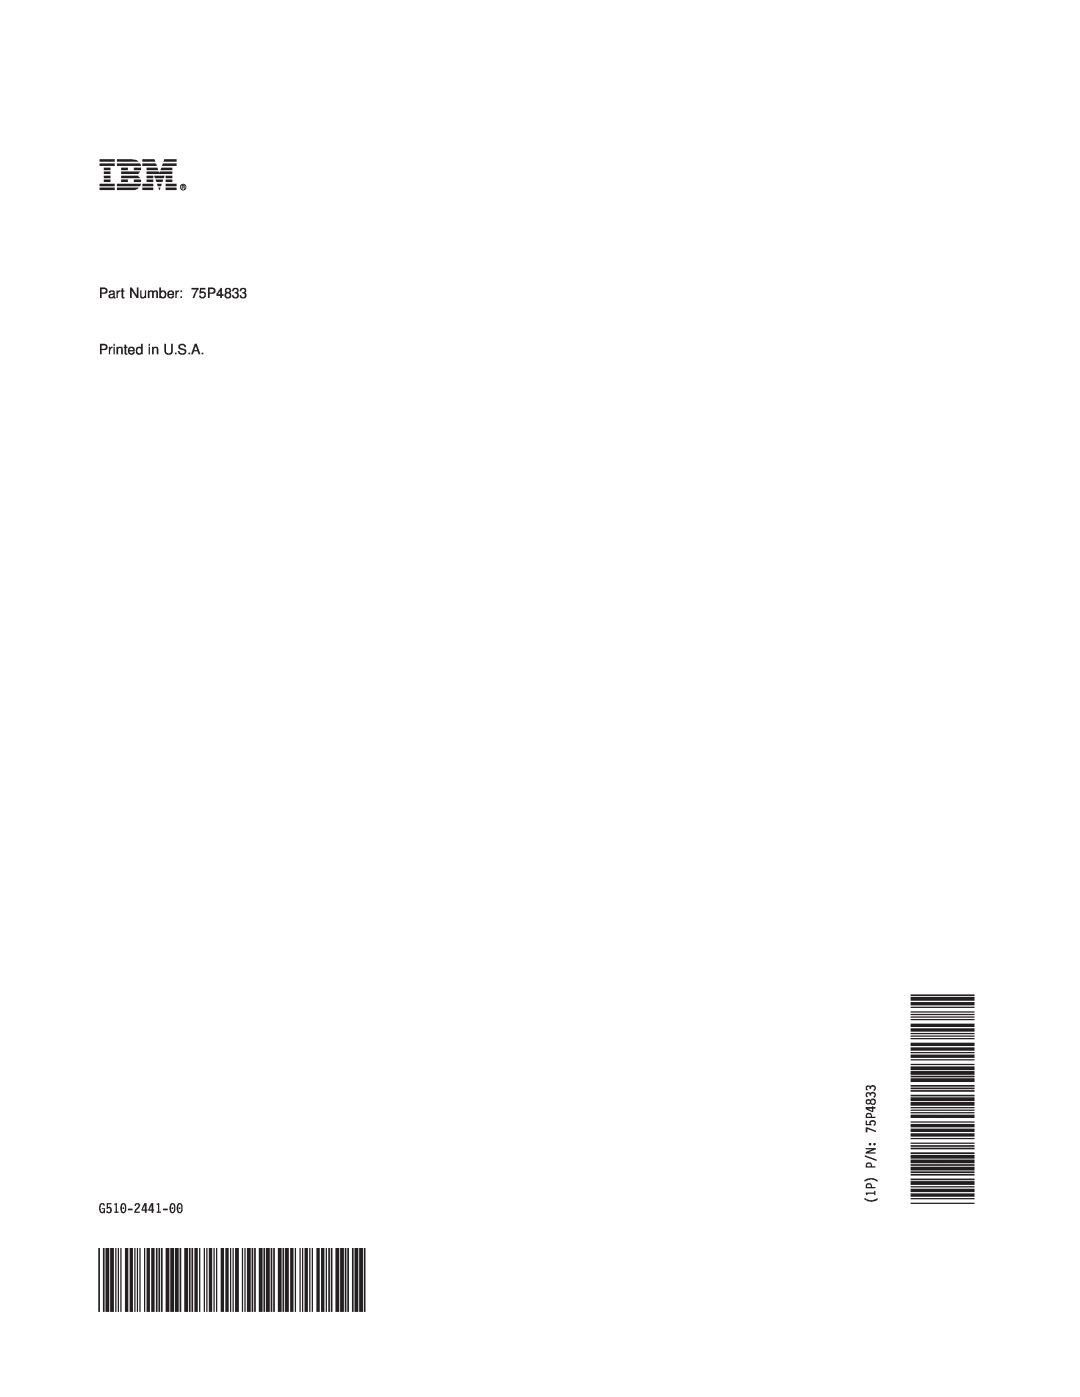 IBM MFP 30, MFP 35 manual Ibmr, Part Number 75P4833 Printed in U.S.A, G510-2441-00, 1P P/N 75P4833 